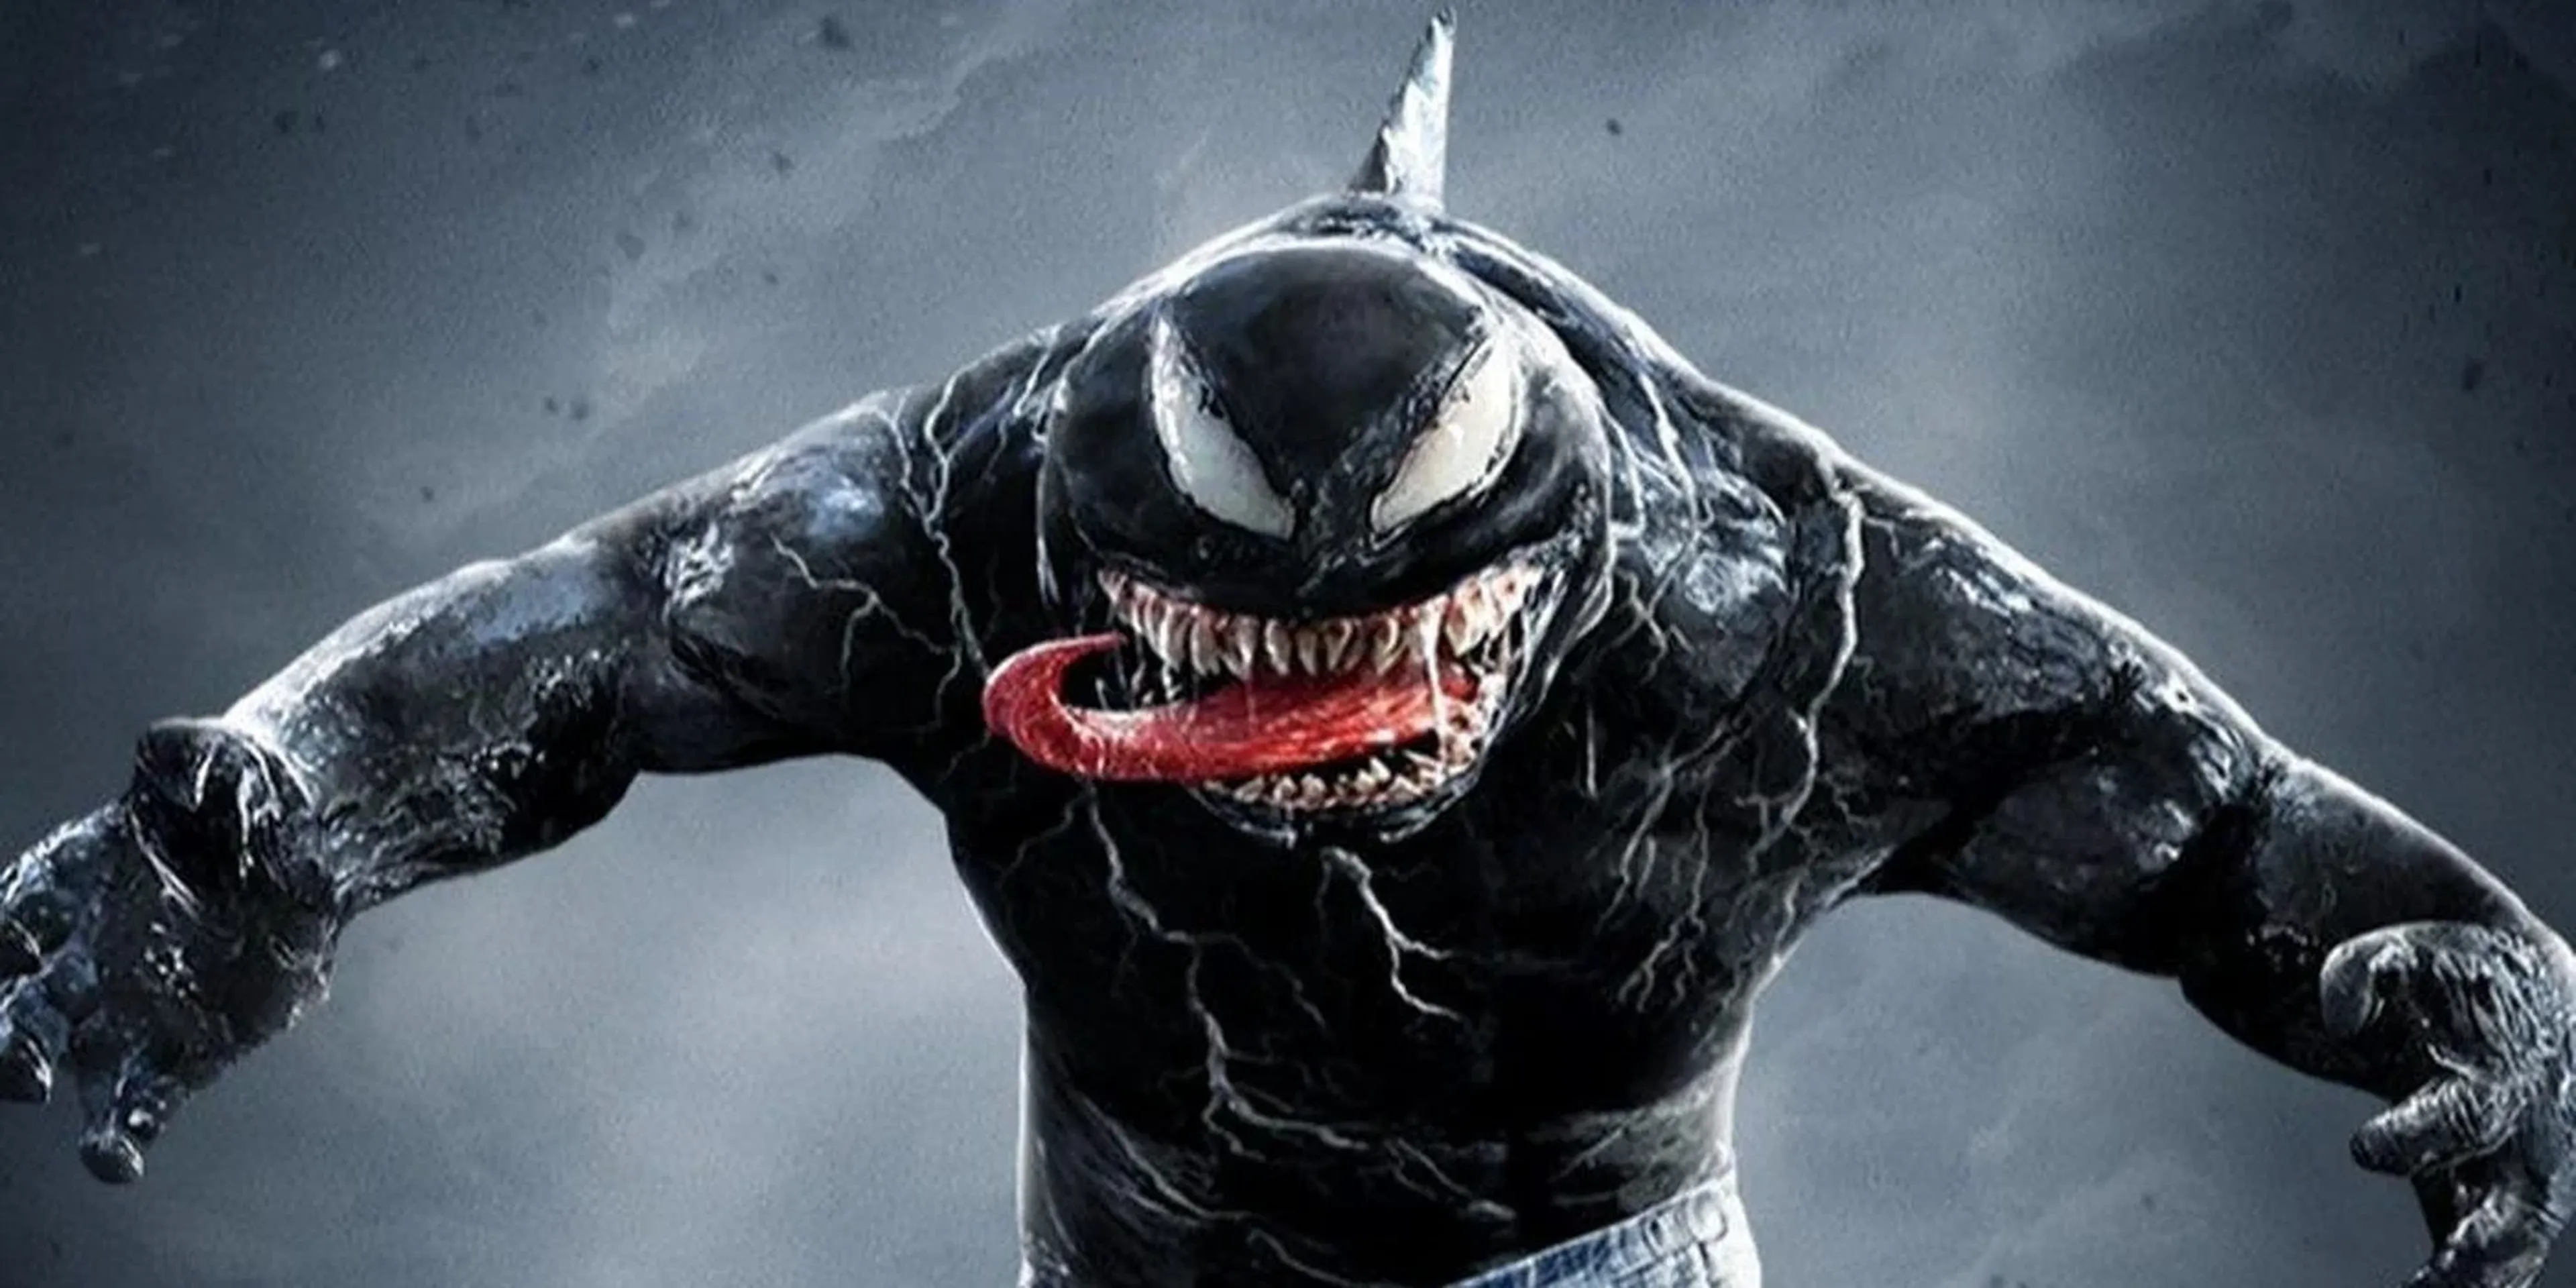 Nom Nom: Let There Be Carnage King Shark Edition venom rey tiburón, Venom: Habrá matanza El Escuadrón Suicida